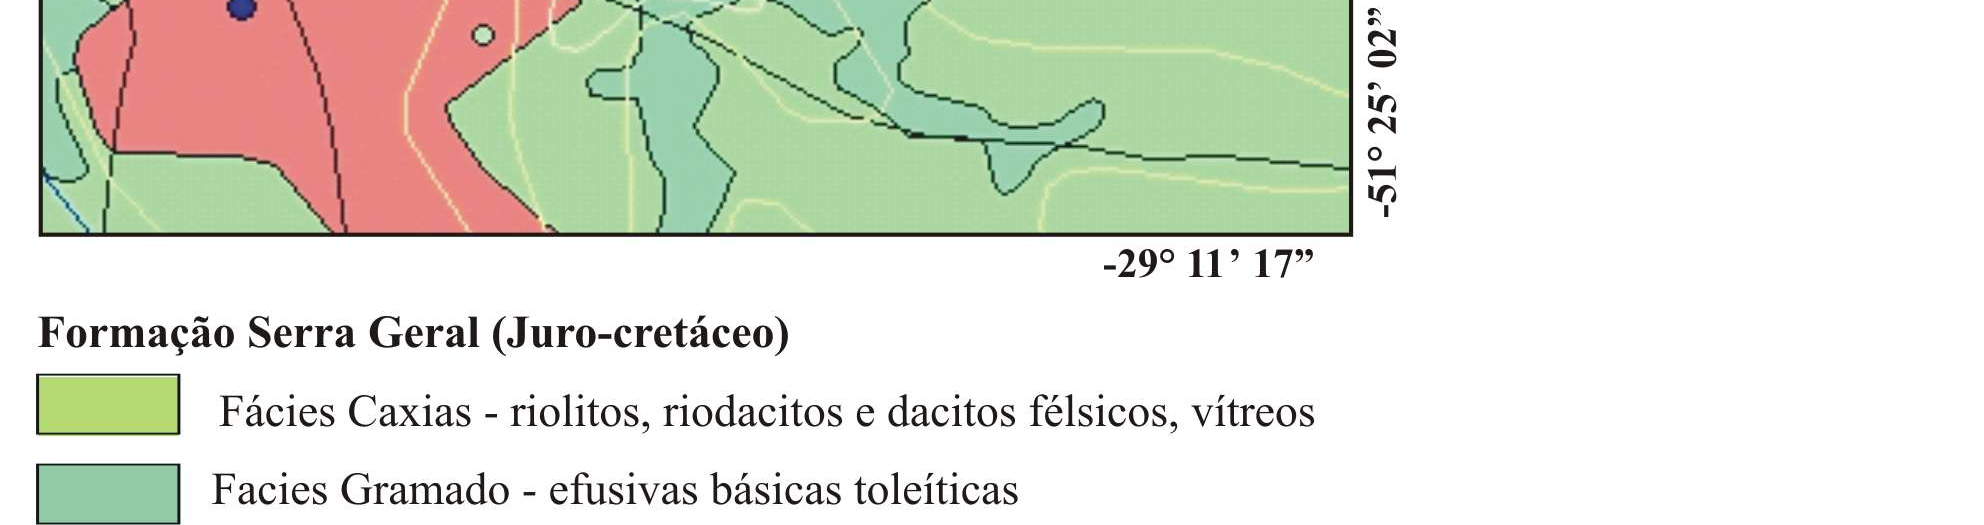 indicação de procedência. As rochas pertencem à Formação Serra Geral, tendo dois fácies característicos: Gramado e Caxias, segundo Schobbenhaus et. al (2004), conforme a Figura 1.